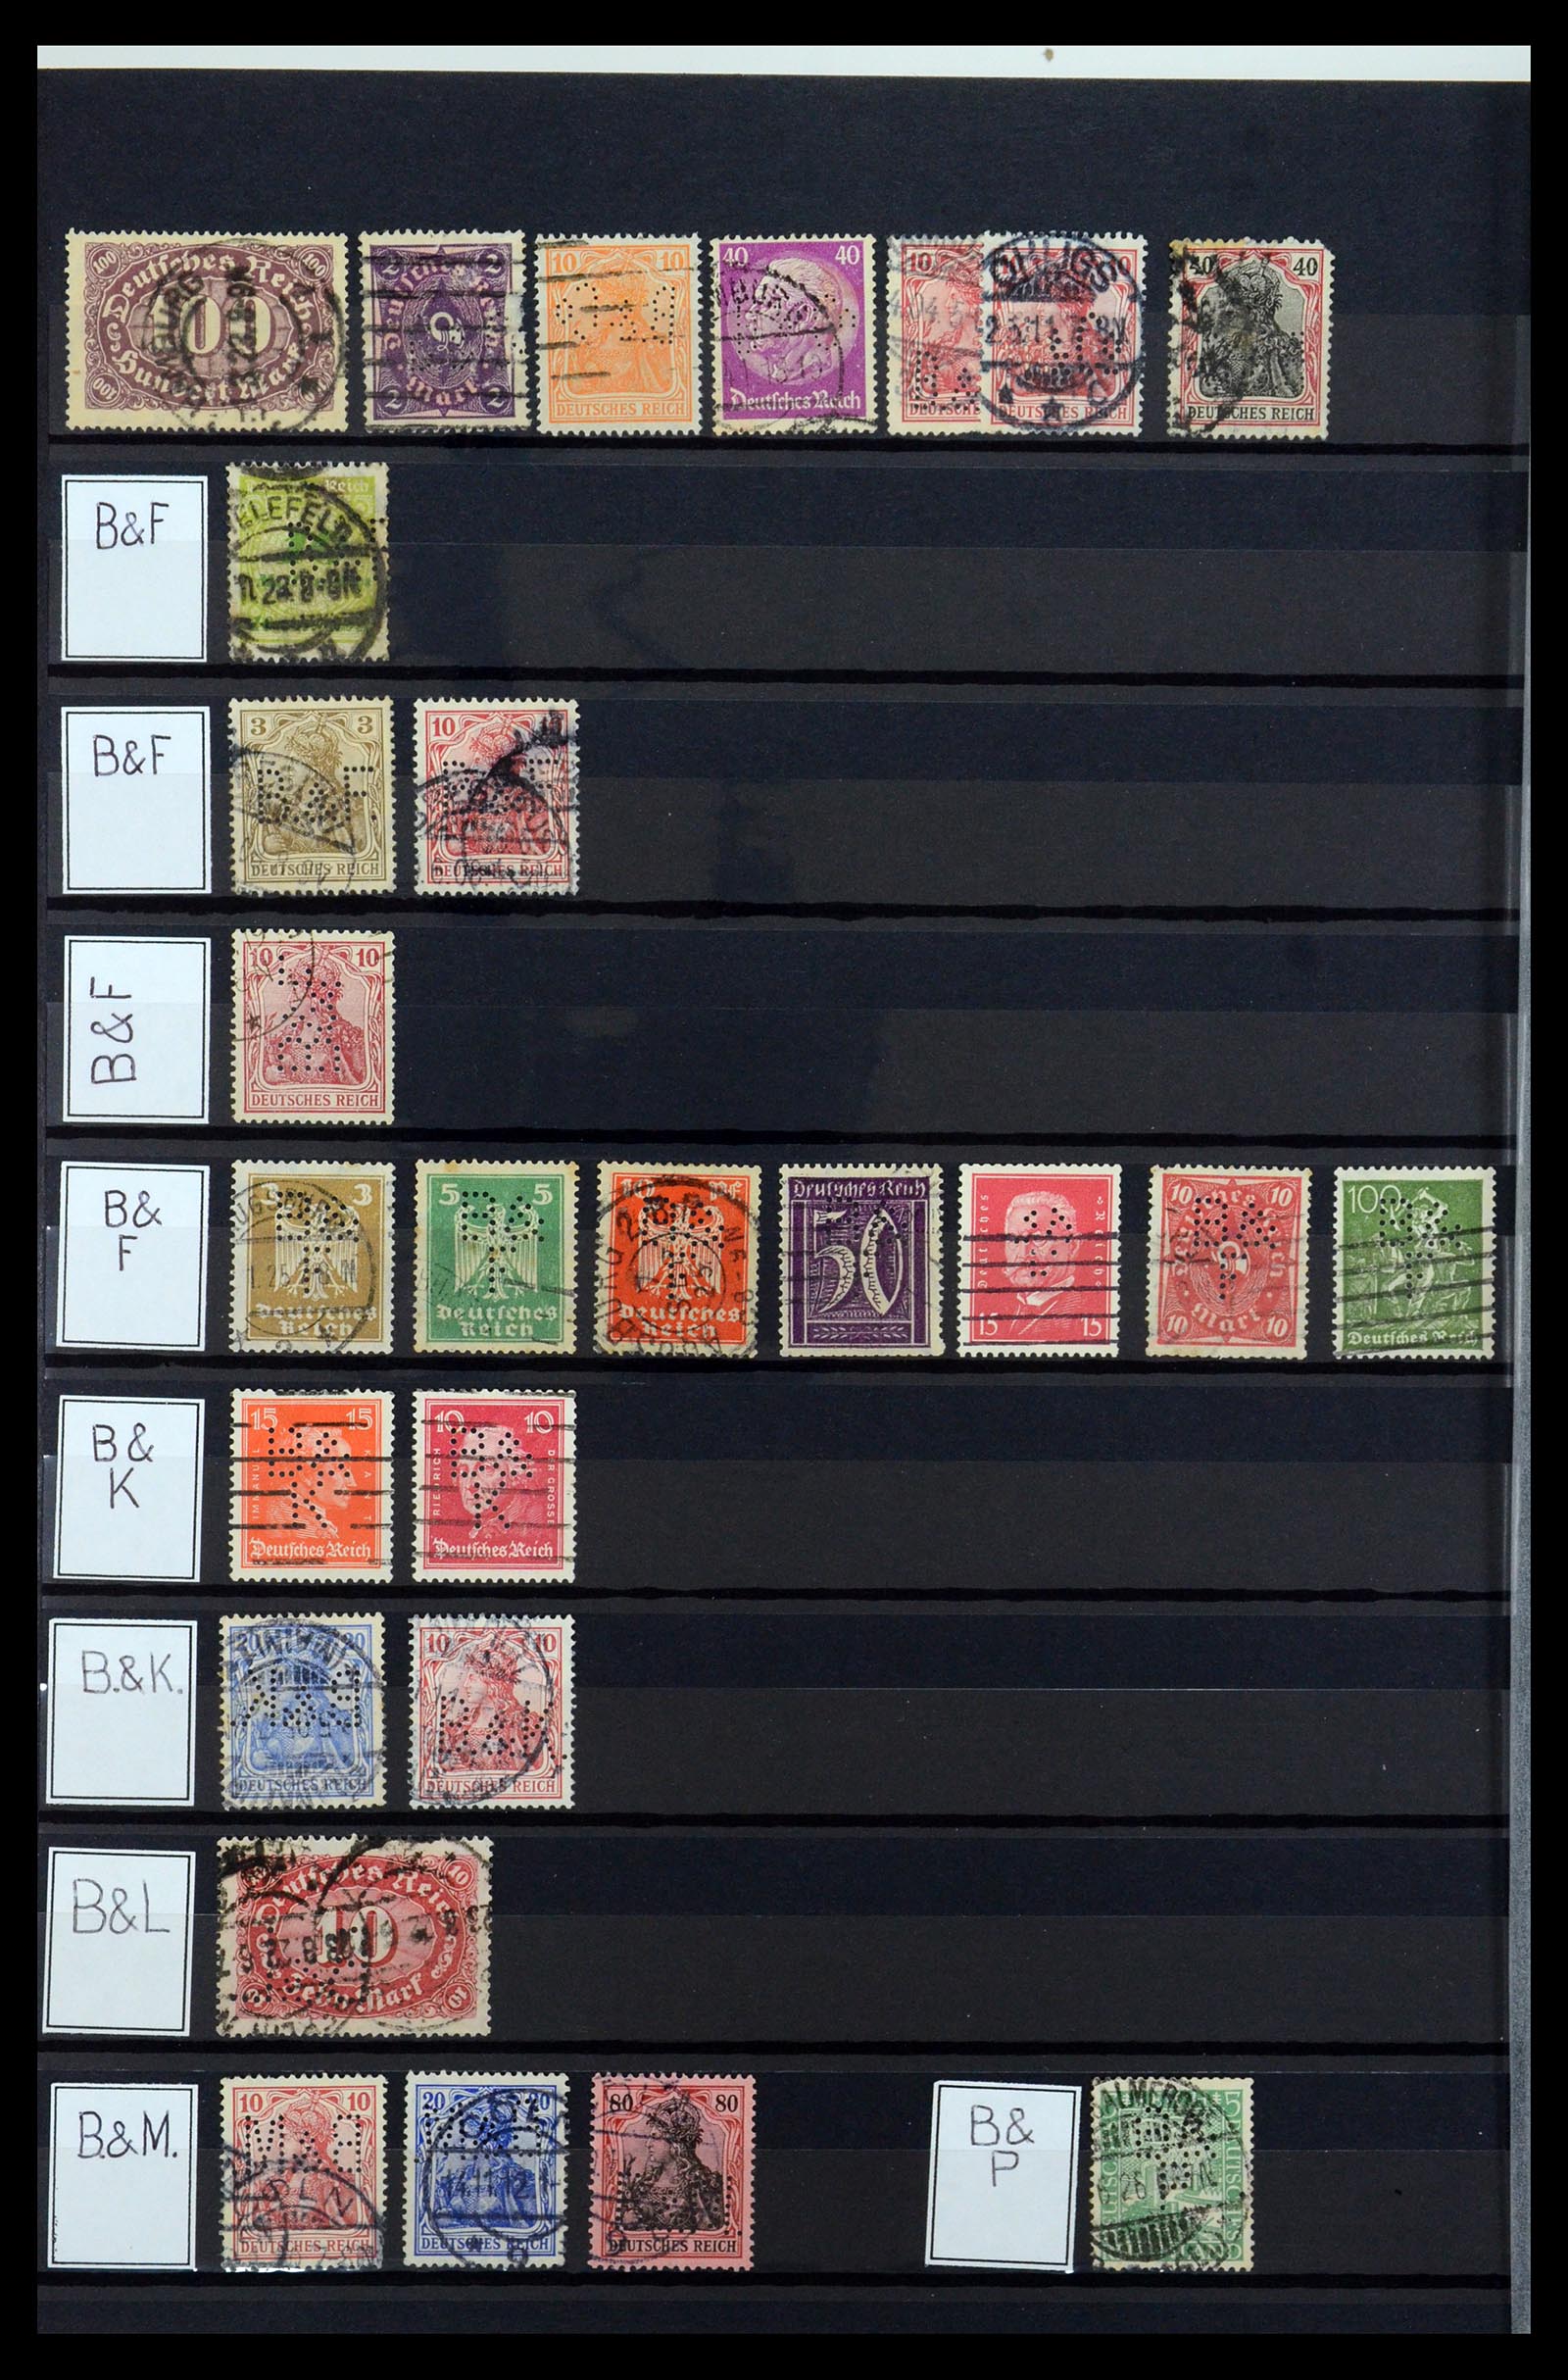 36405 052 - Stamp collection 36405 German Reich perfins 1880-1945.